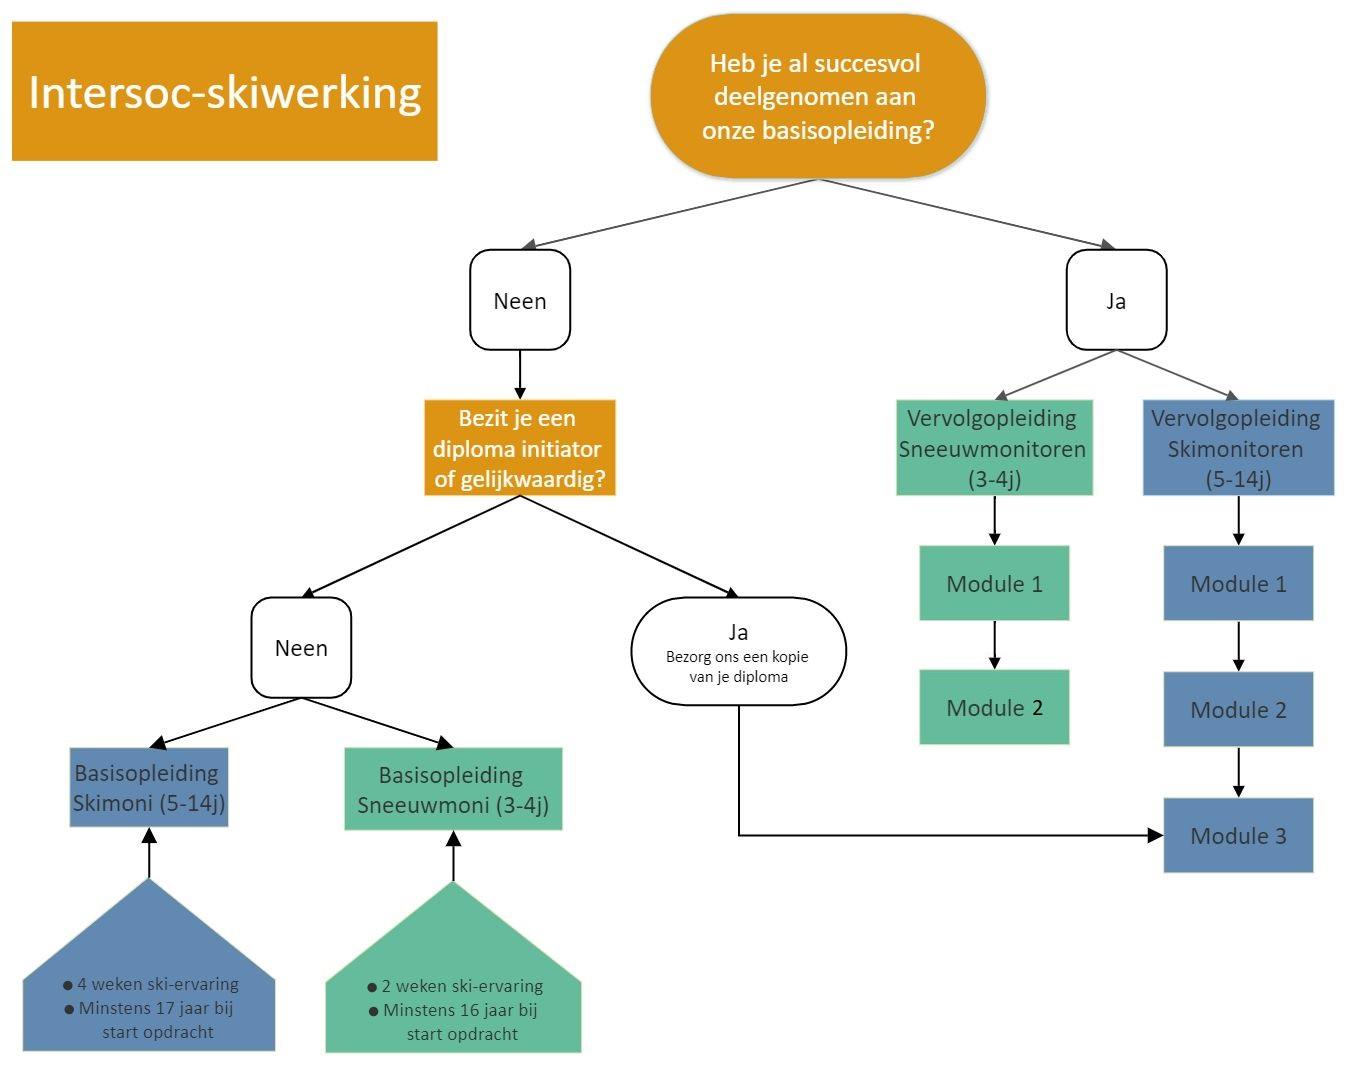 storage/work/flowchart-intersoc-skiwerking-2020.jpg